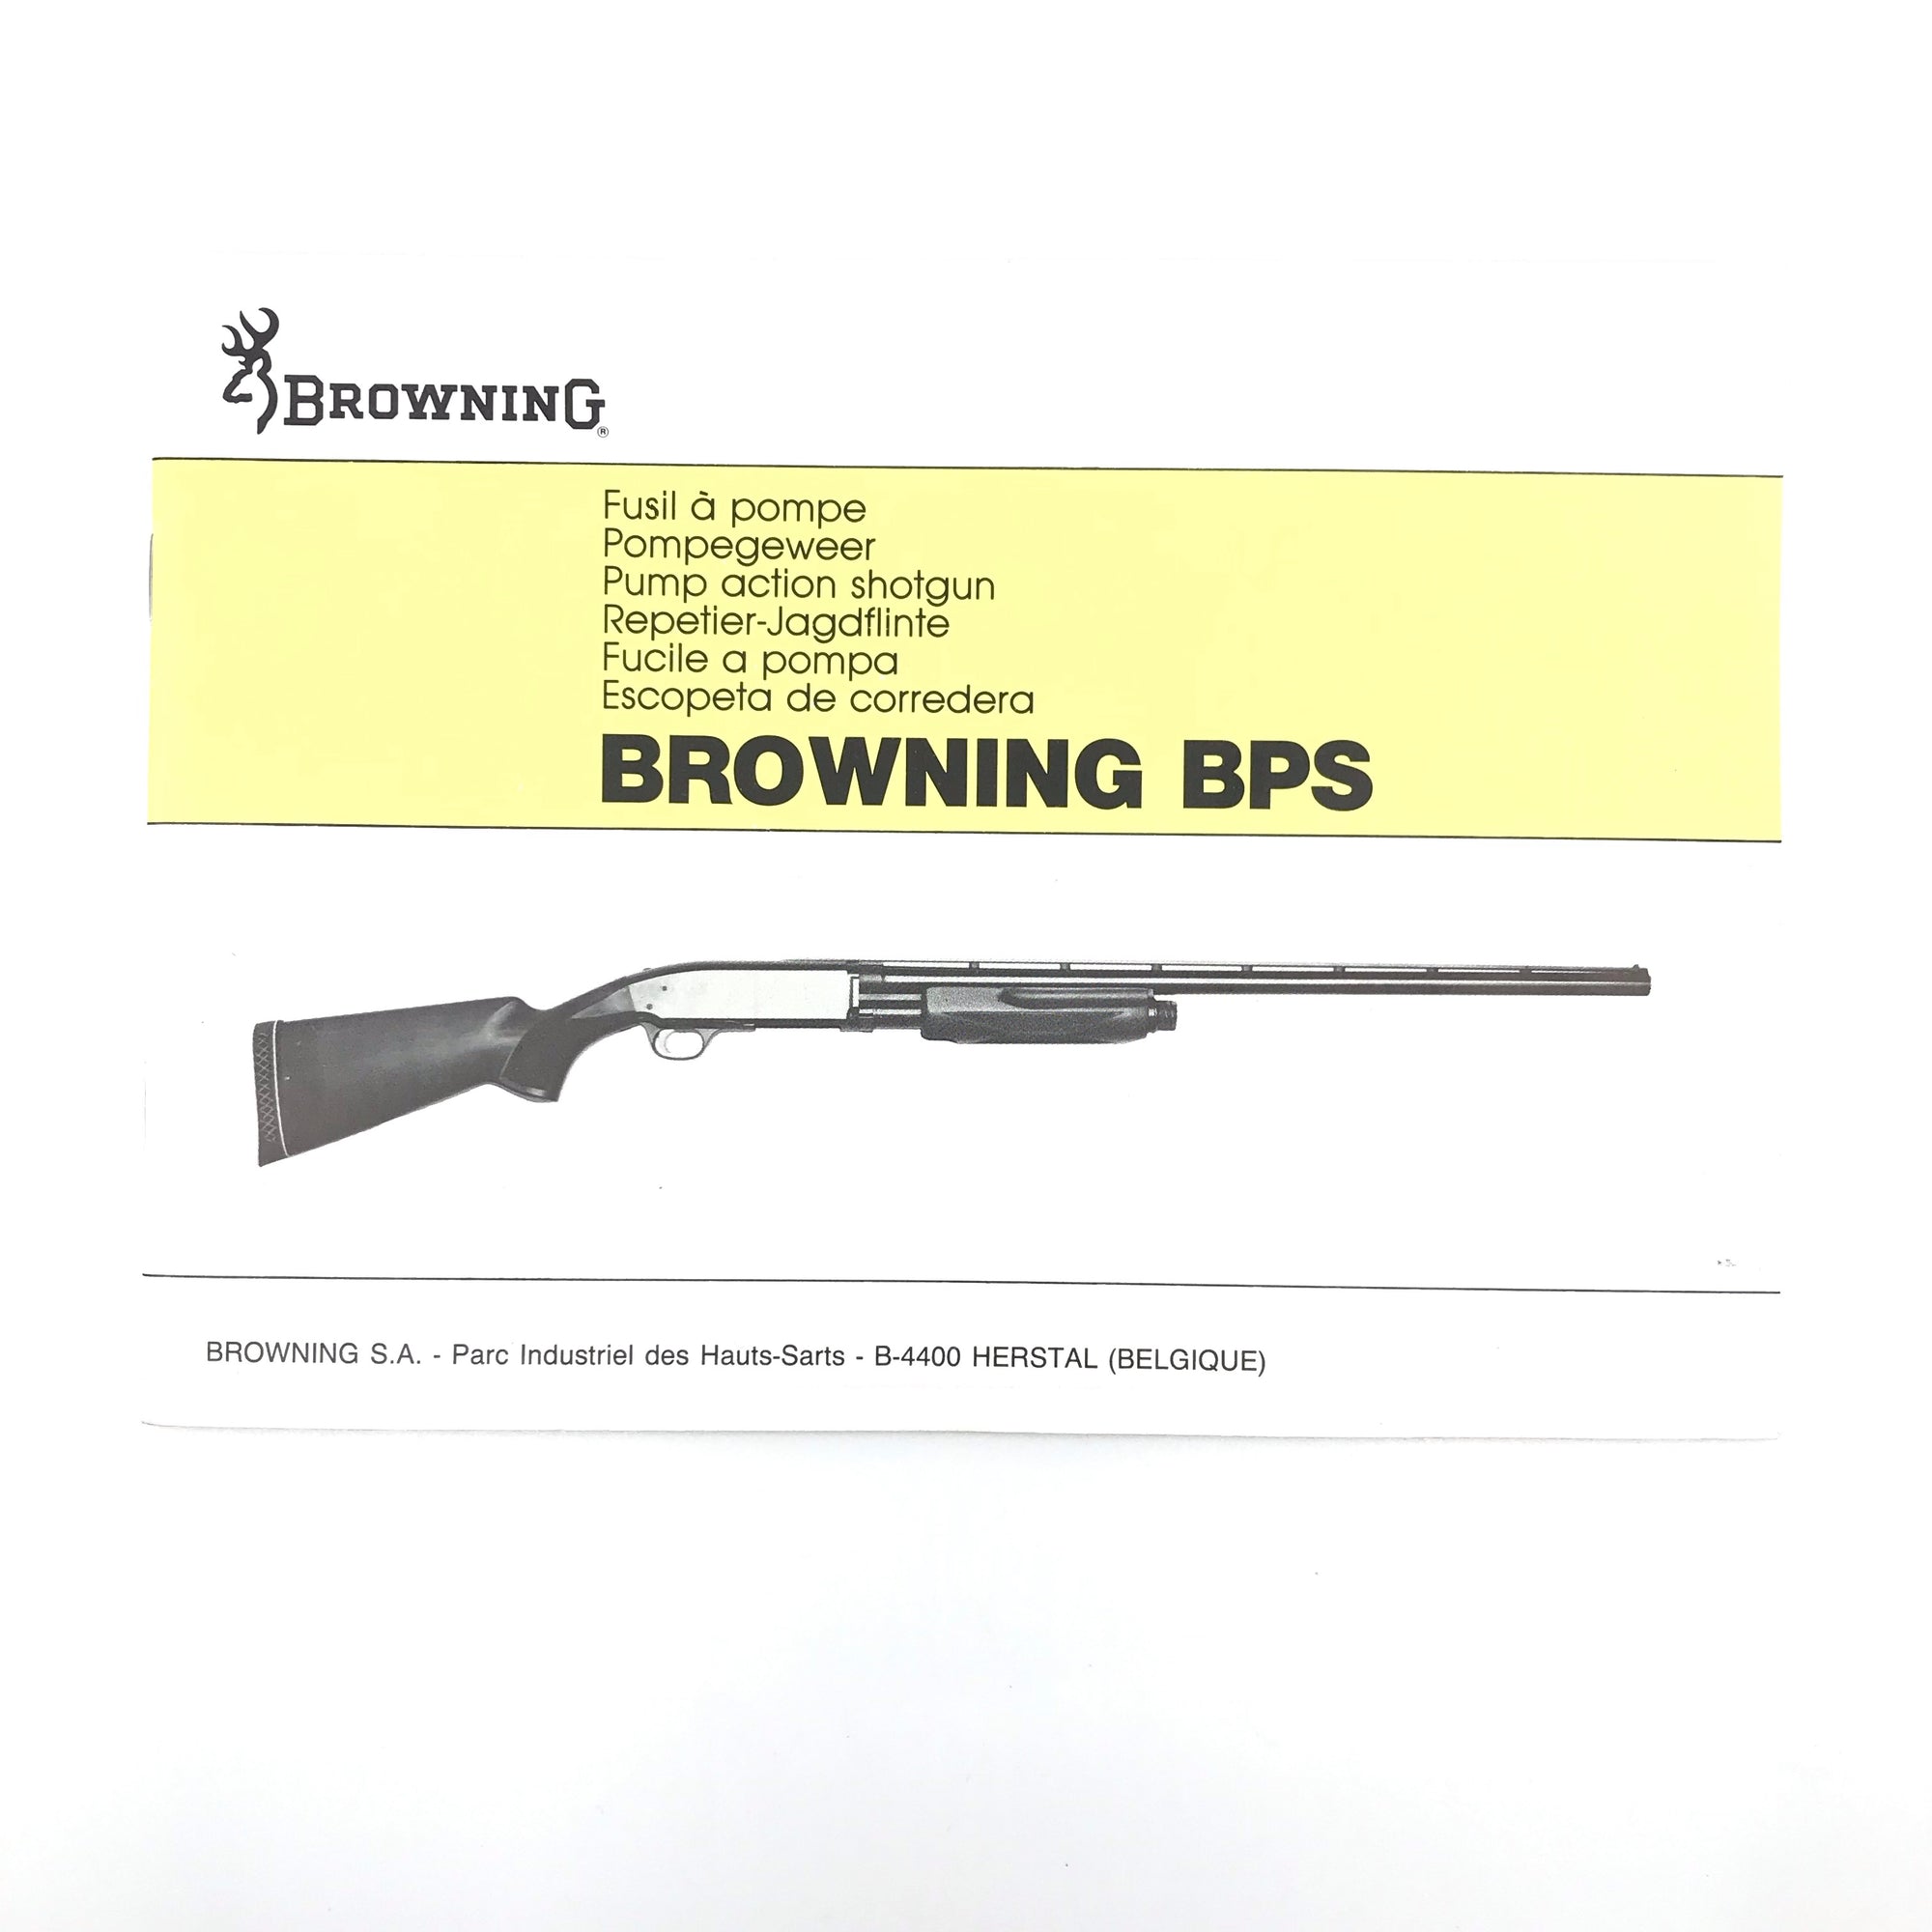 Browning BPS Pump Action Shotgun Pamphlet